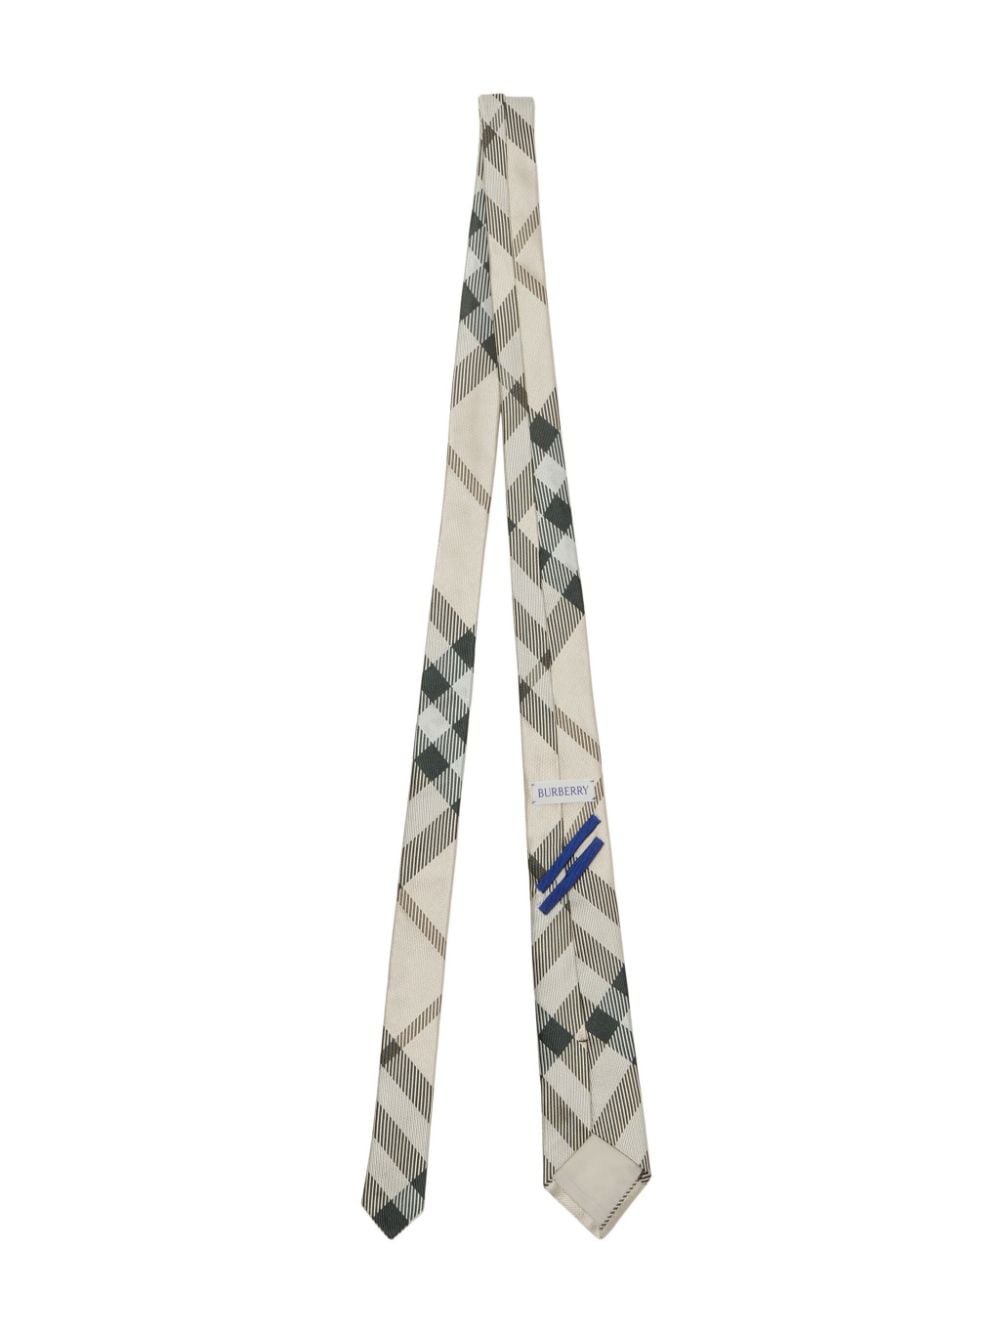 Burberry checkered silk tie - Beige